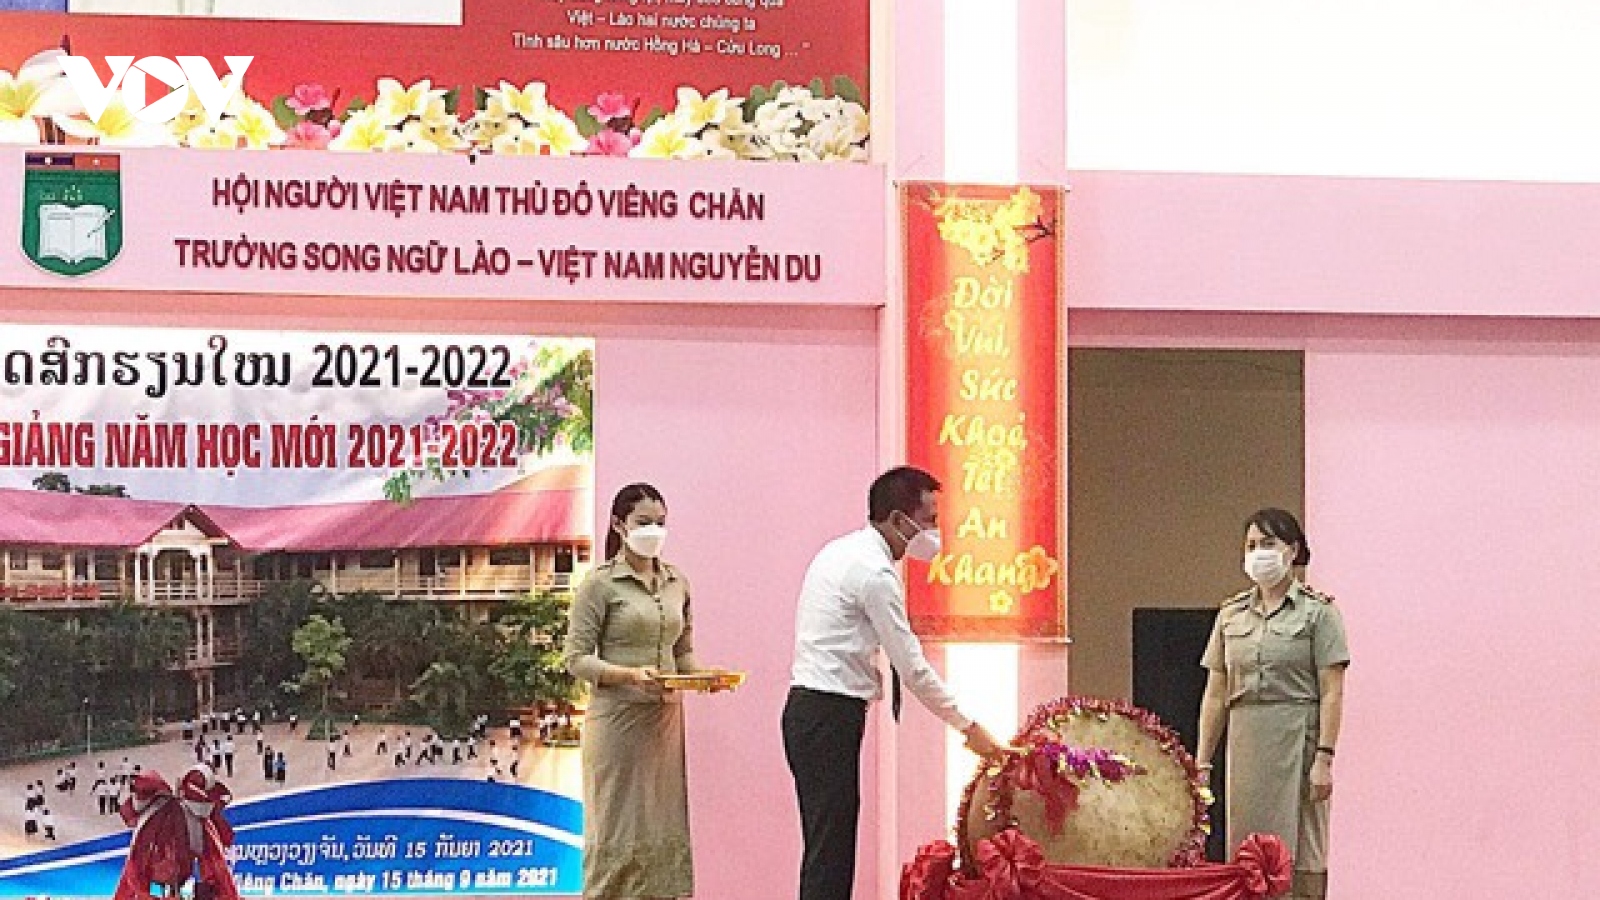 Trường song ngữ Lào - Việt Nam Nguyễn Du khai giảng năm học 2021-2022